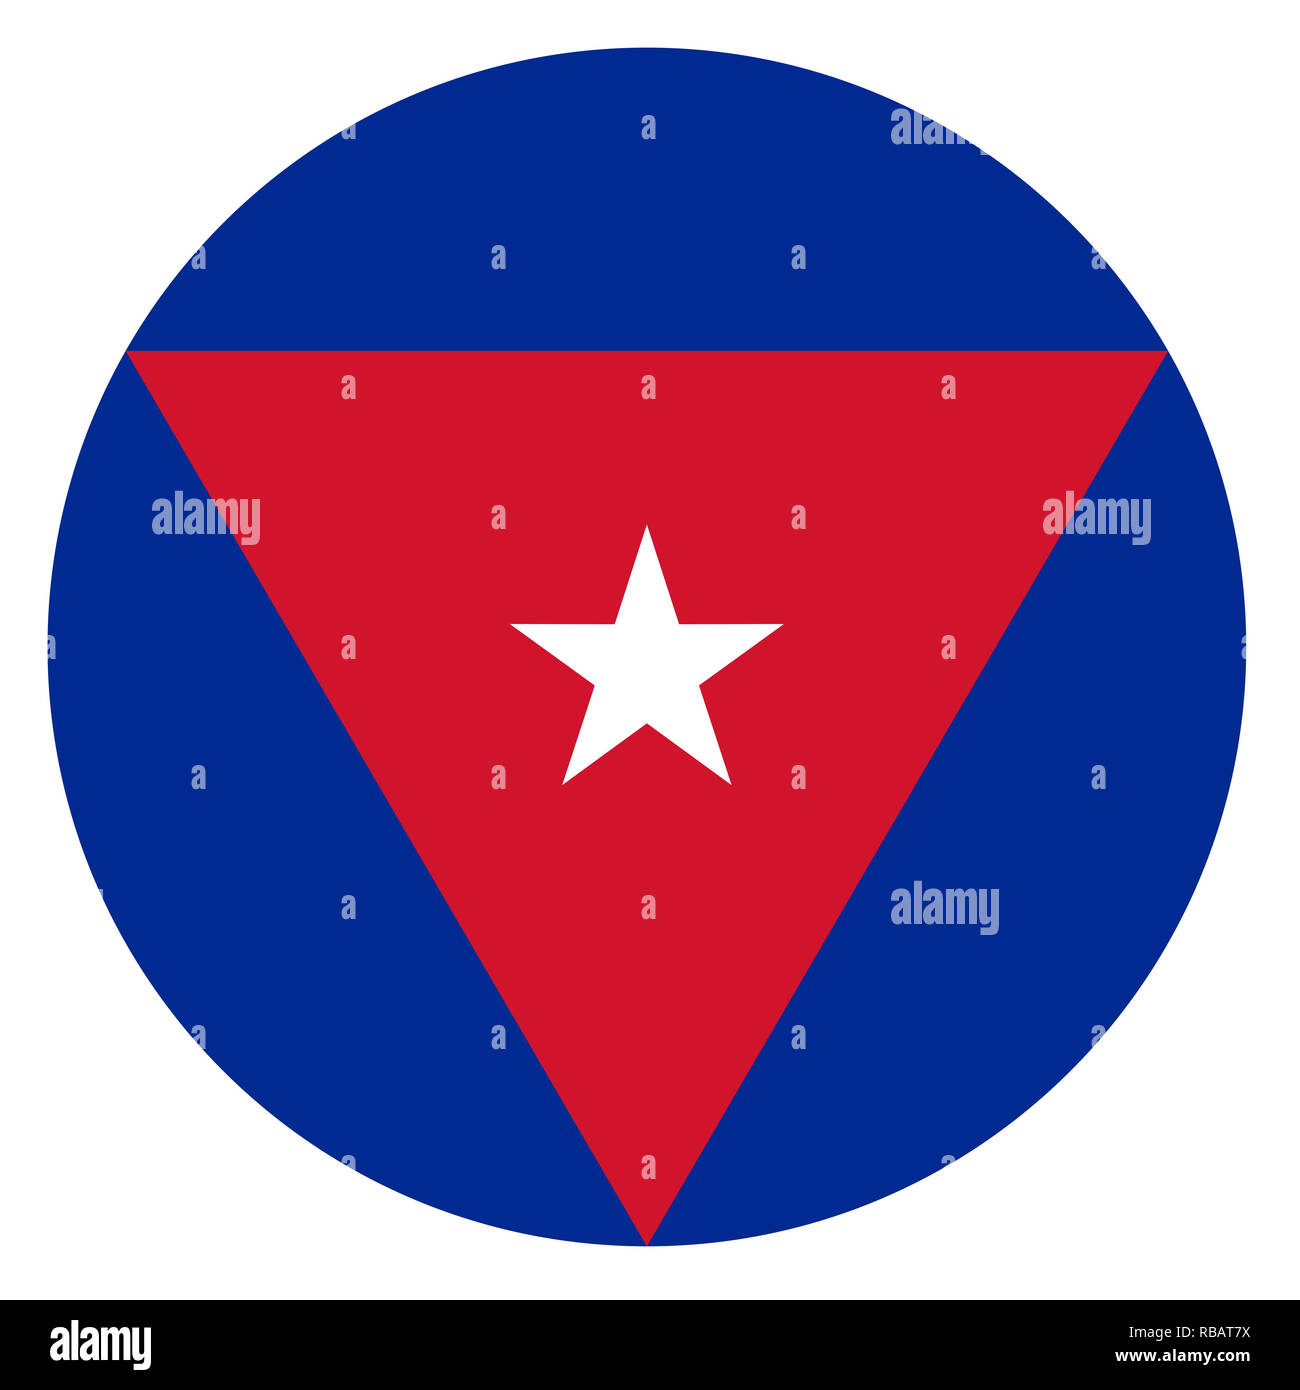 Cuba country roundel flag based round symbol Stock Photo